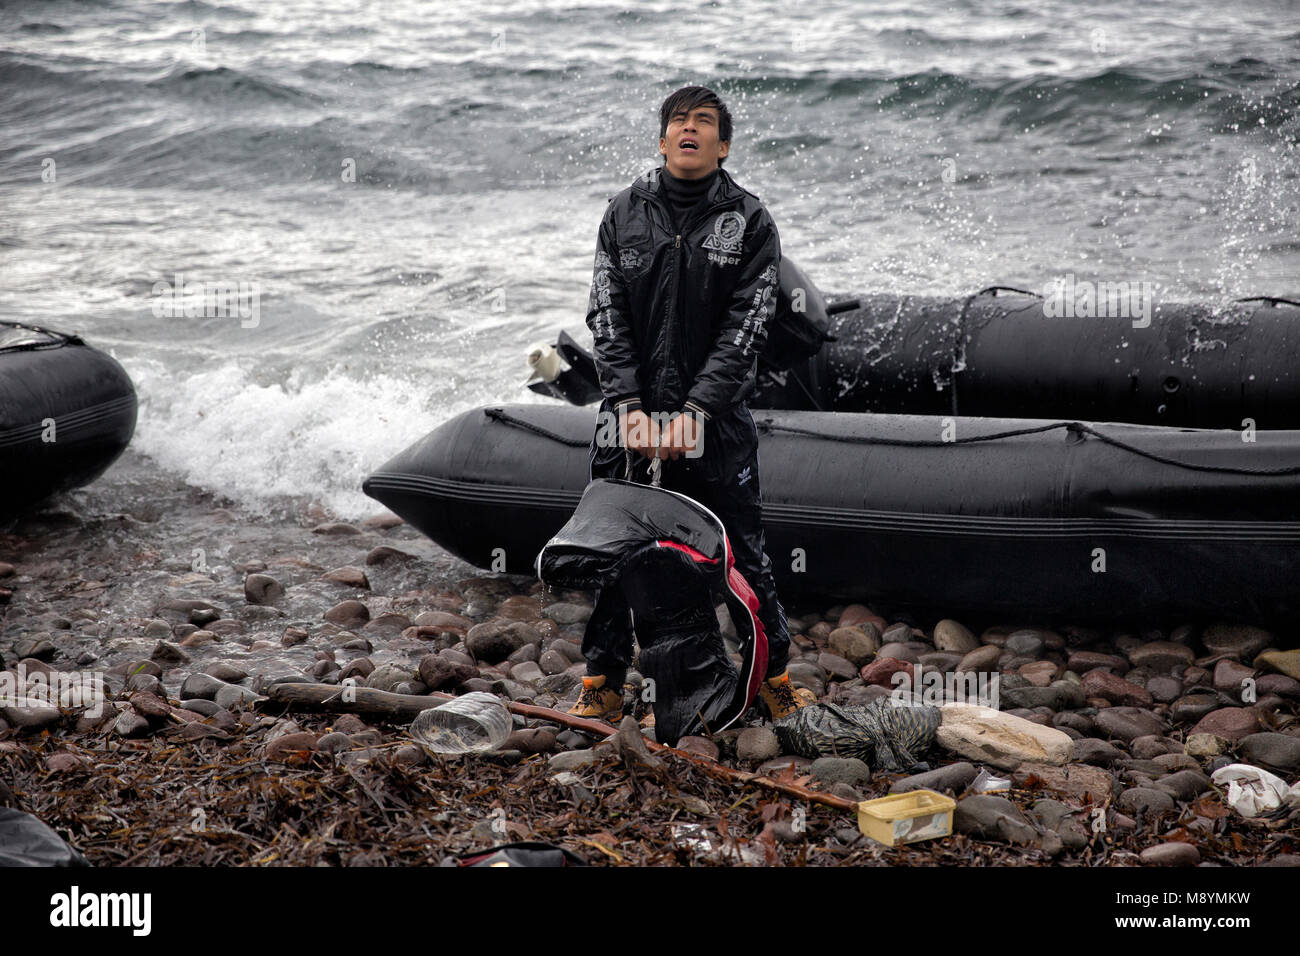 Un richiedente asilo che arriva in Grecia dopo un viaggio attraverso un acquazzone e pericolose condizioni del mare. Nel 2015 più di un milione di immigrati arrivati in Europa dal mare. Gli immigrati sono principalmente di rifugiati che fuggono dalla guerra in Siria. Foto Stock